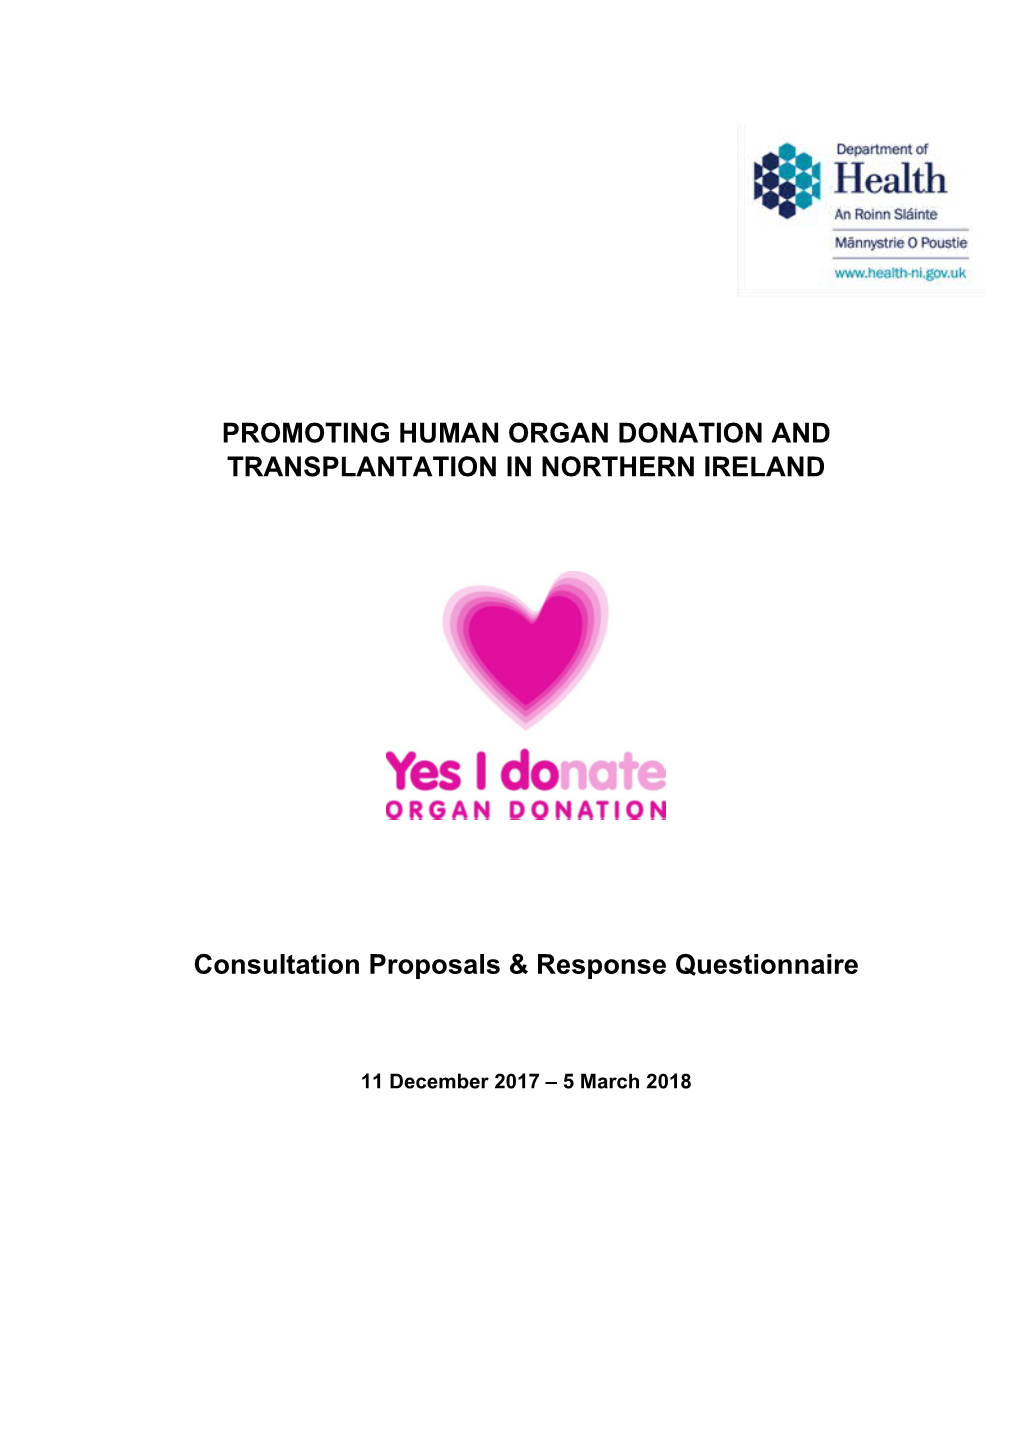 Consultation Proposals & Response Questionnaire